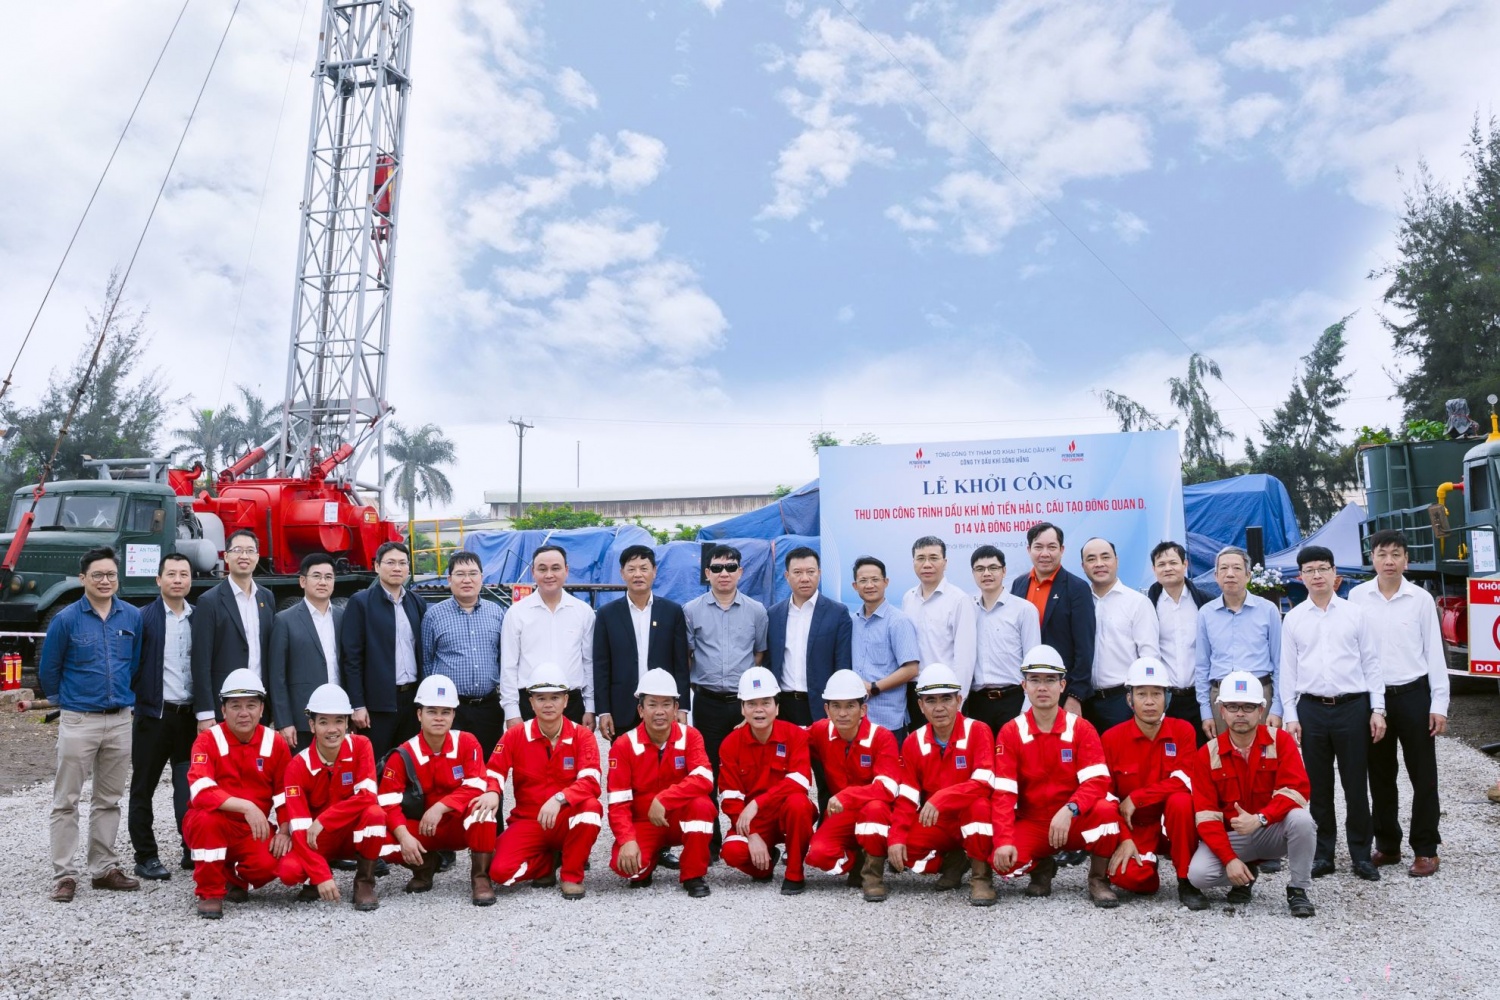 PVEP Sông Hồng khởi công thu dọn công trình dầu khí tại tỉnh Thái Bình